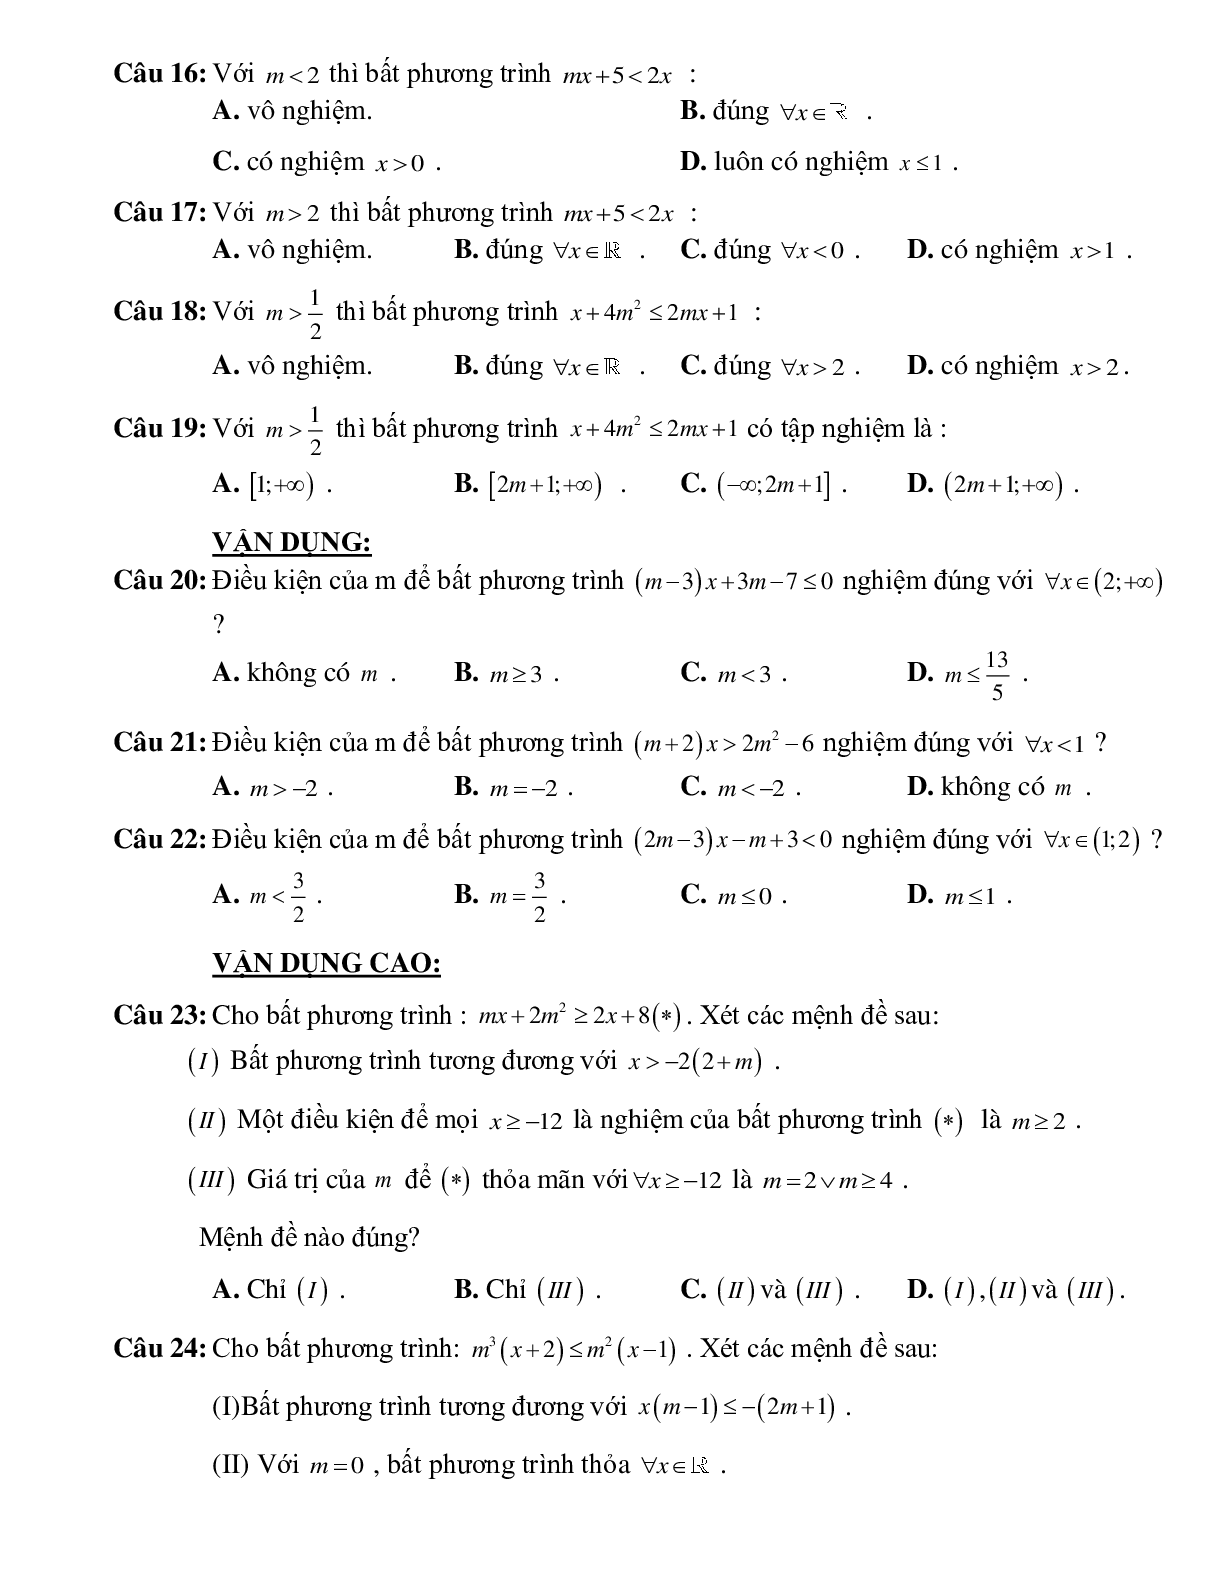 Bài tập tìm tham số để bất phương trình bậc nhất một ẩn có nghiệm thỏa mãn điều kiện Toán 10 (trang 4)